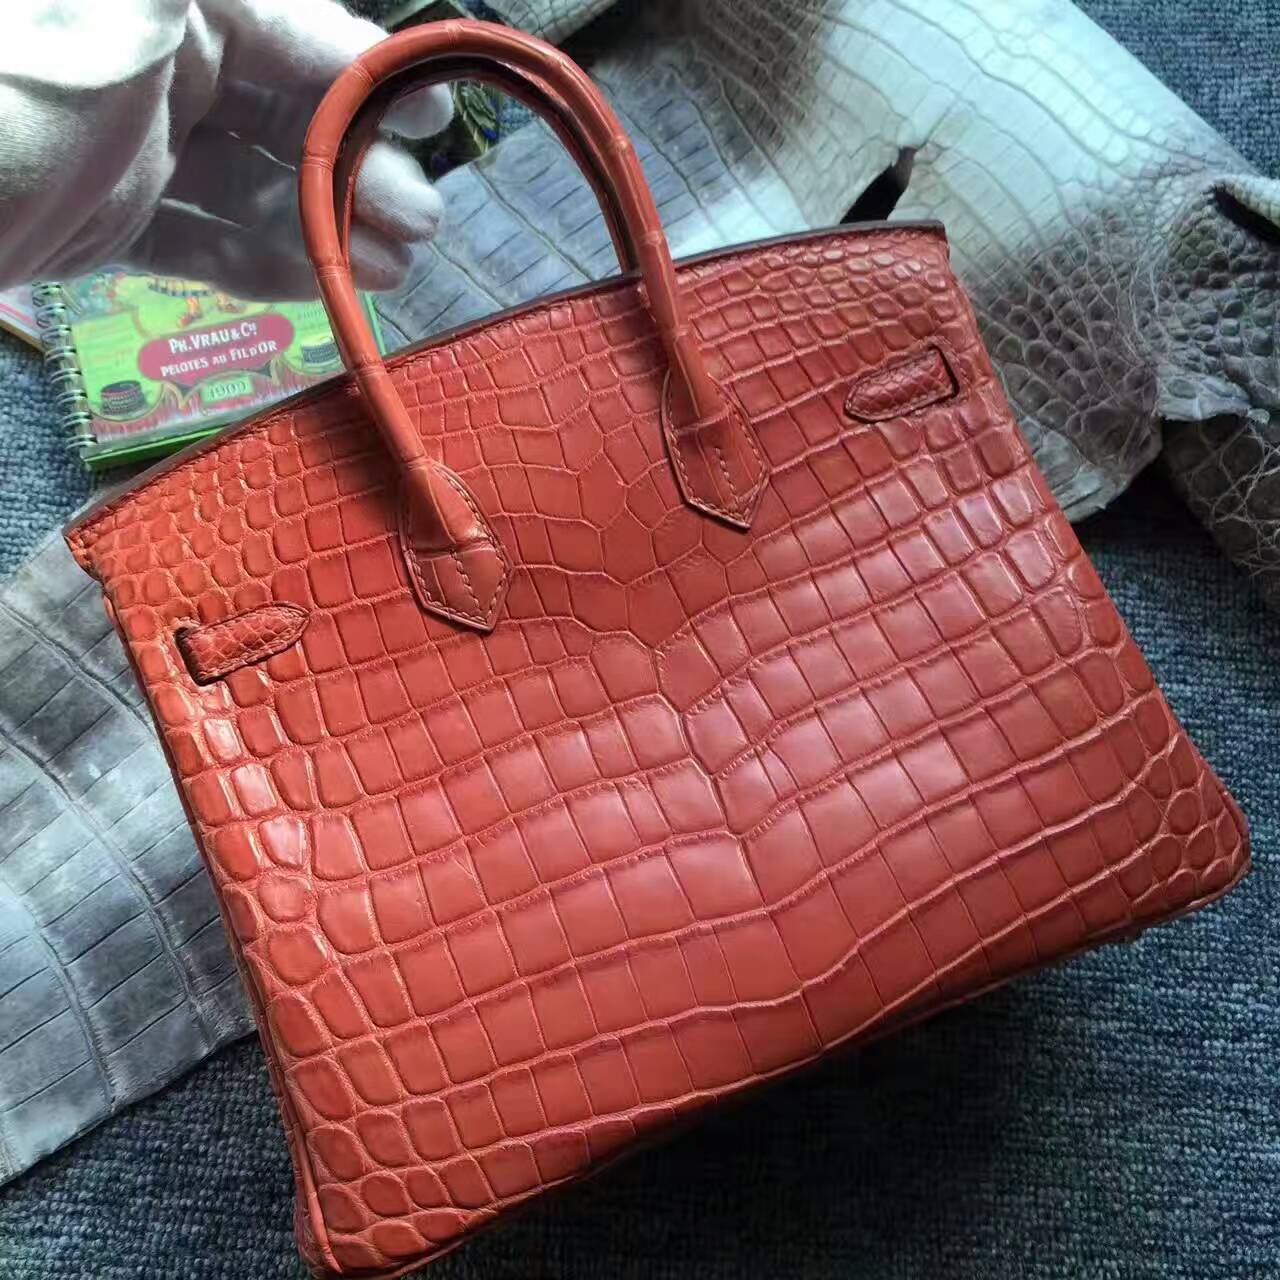 Wholesale Hermes Birkin Bag 25cm in Salmon Red Crocodile Matt Leather